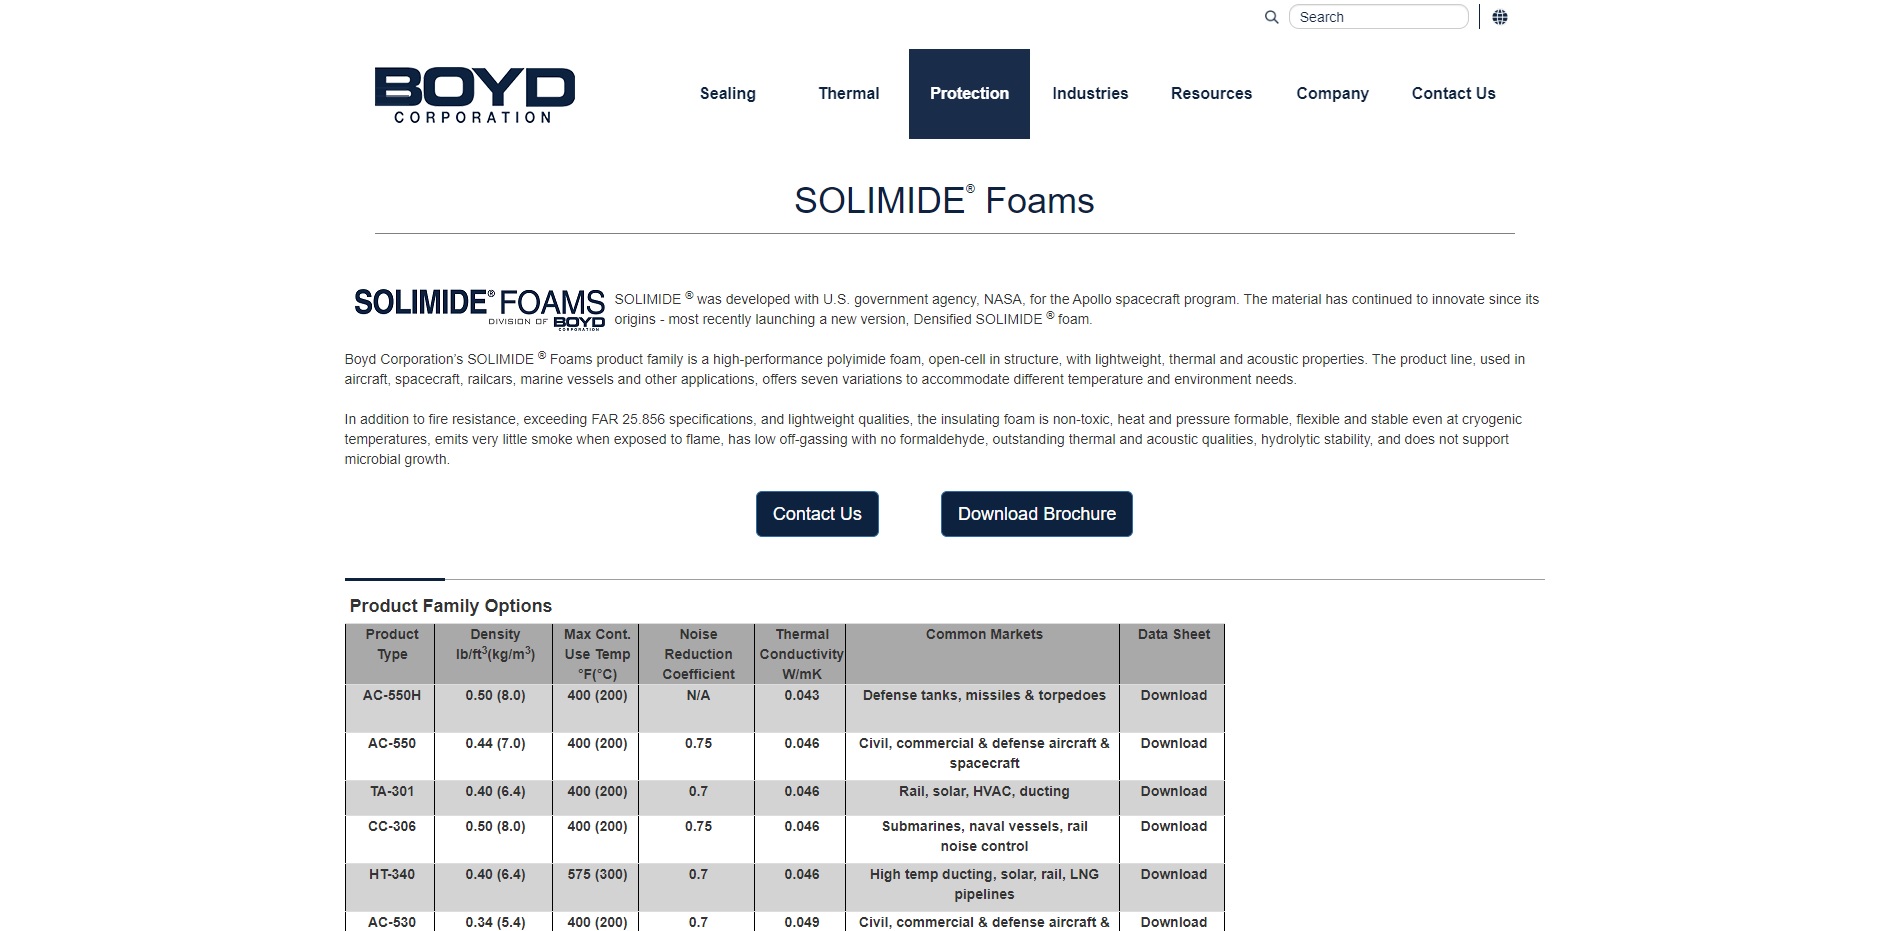 Solimide Foams/ Boyd Corporation